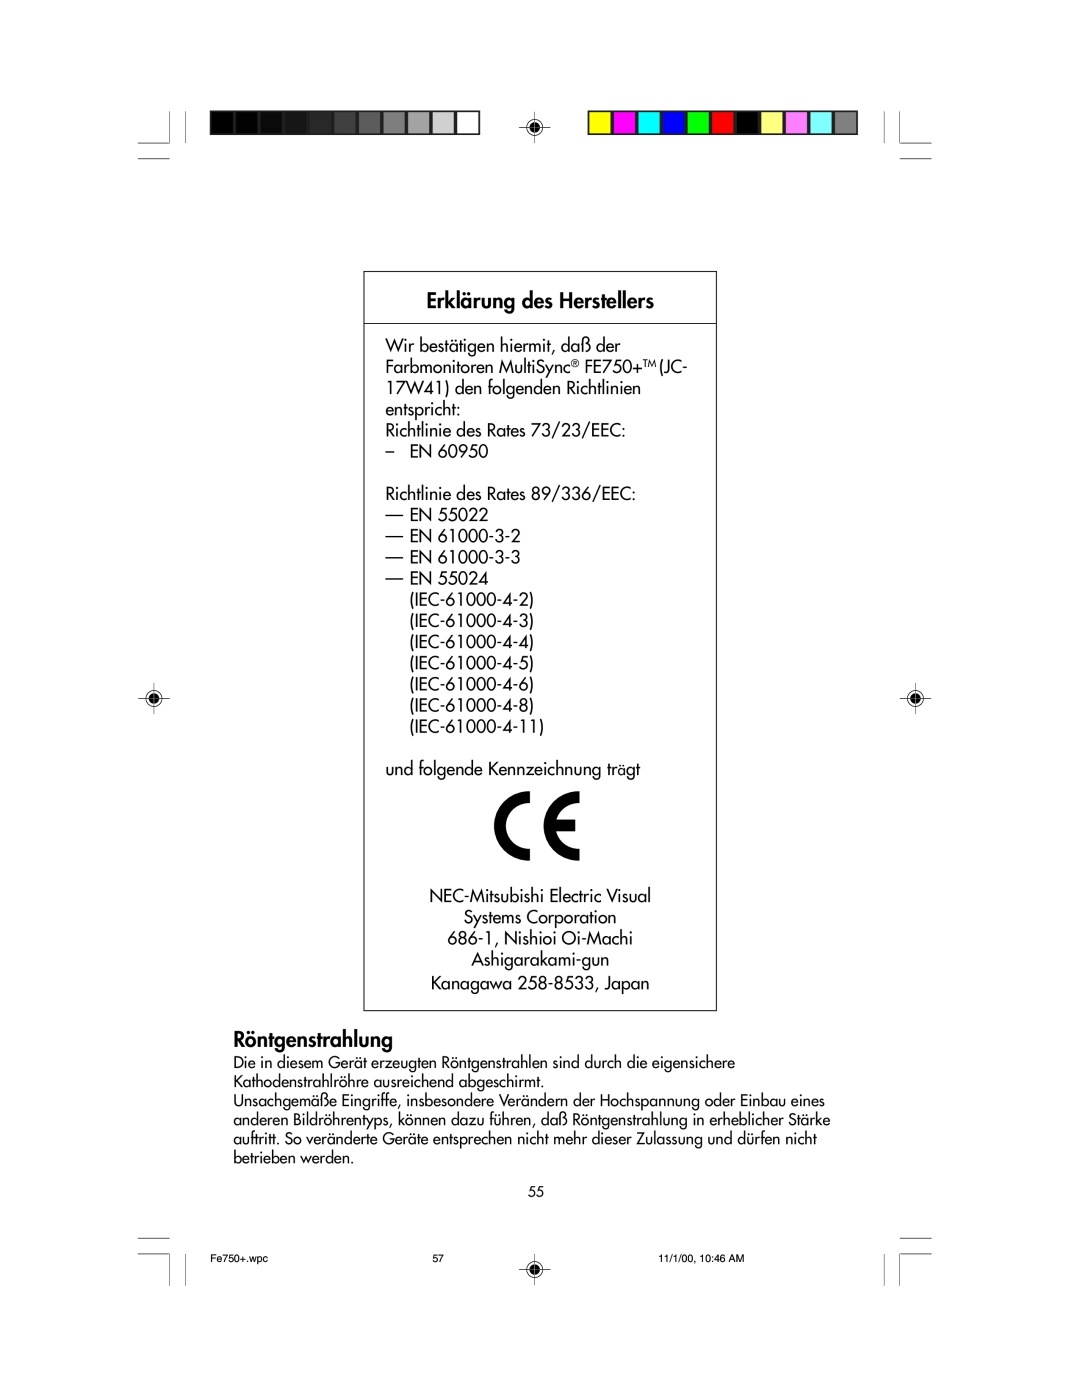 NEC FE750 Plus user manual Erklärung des Herstellers, Röntgenstrahlung 